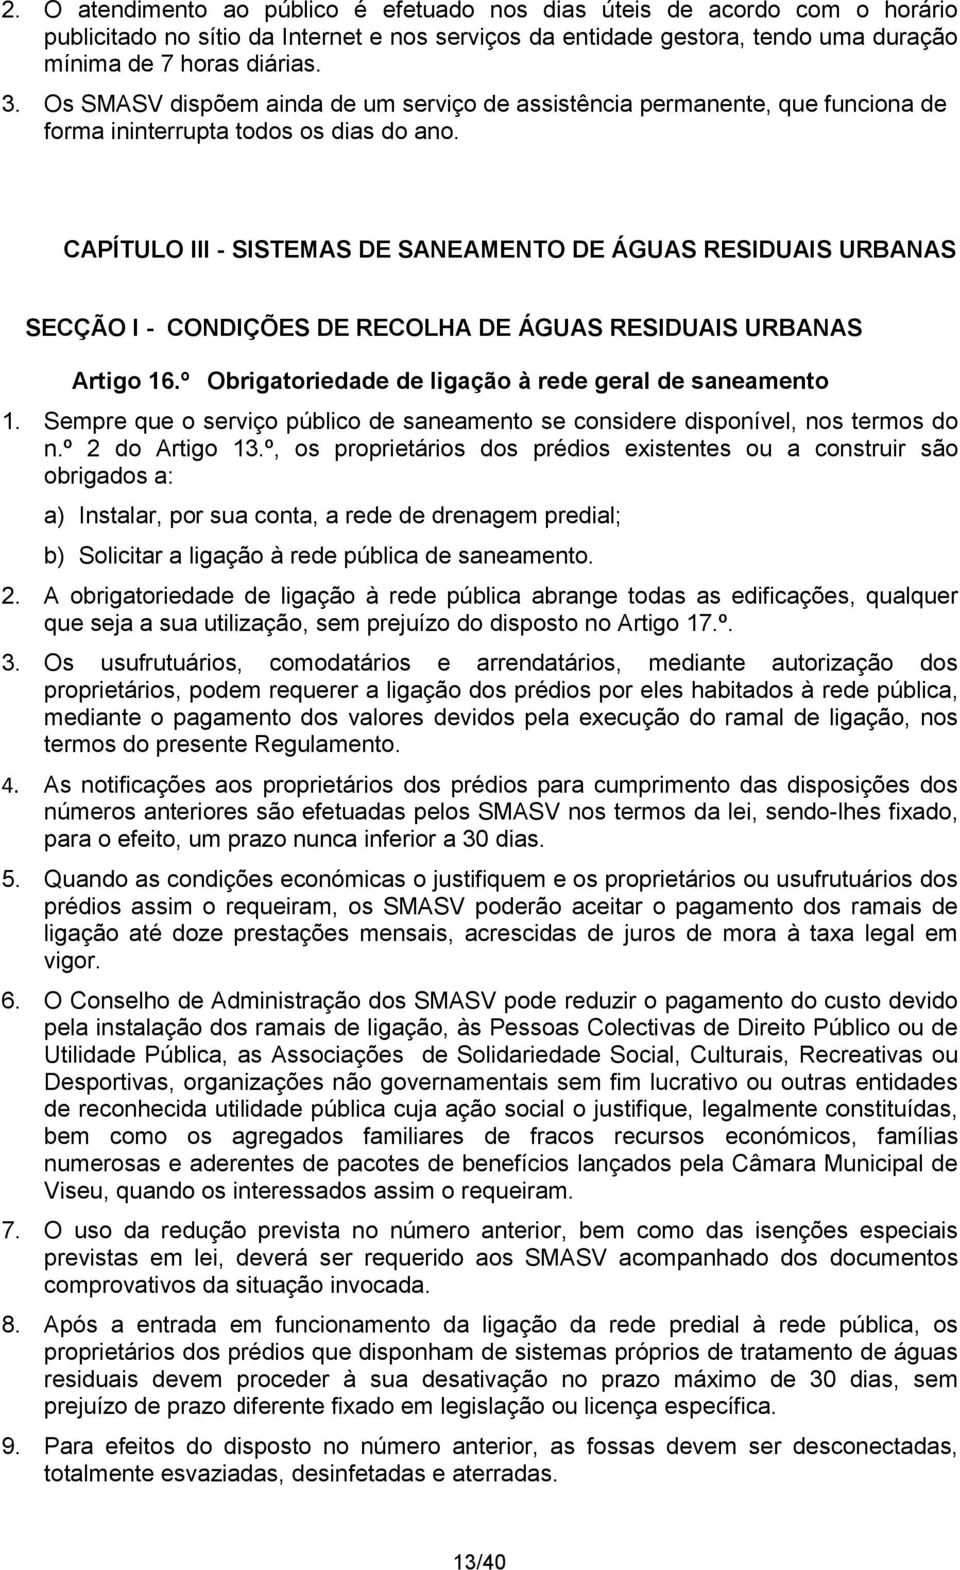 CAPÍTULO III - SISTEMAS DE SANEAMENTO DE ÁGUAS RESIDUAIS URBANAS SECÇÃO I - CONDIÇÕES DE RECOLHA DE ÁGUAS RESIDUAIS URBANAS Artigo 16.º Obrigatoriedade de ligação à rede geral de saneamento 1.